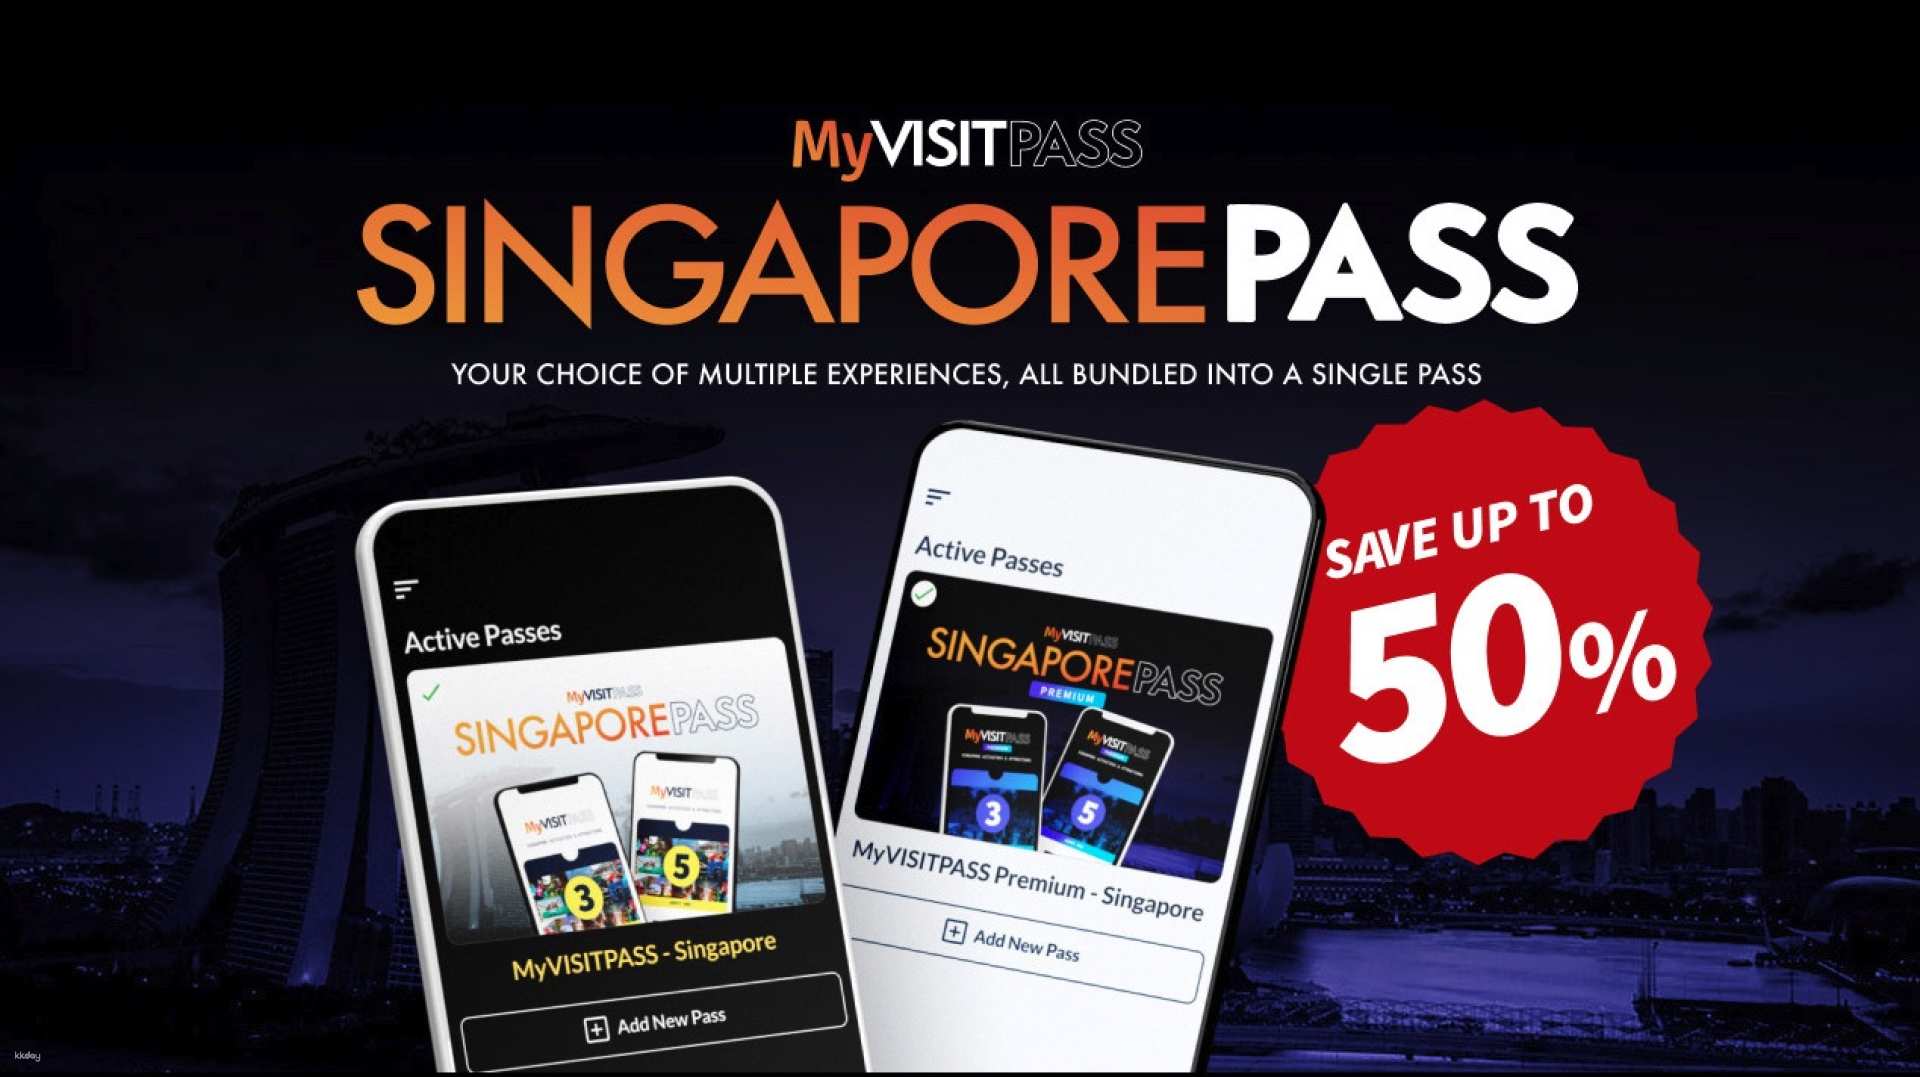 新加坡-MyVISITPASS 多重體驗通行證| 濱海灣花園&新加坡環球影城&新加坡夜間野生動物園&新加坡纜車&天際斜坡滑車等